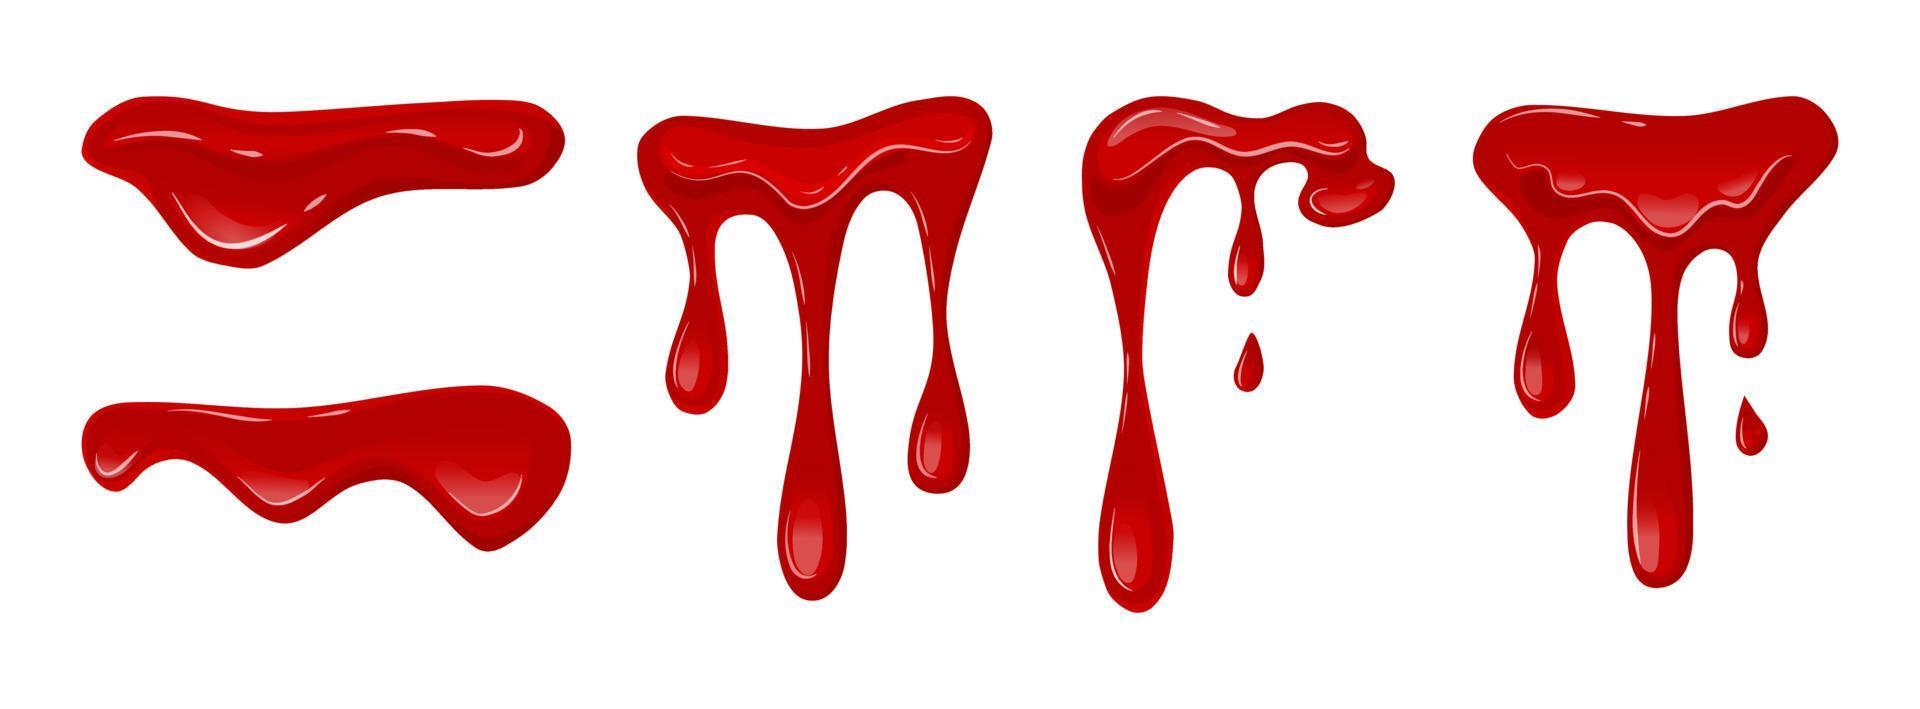 sang qui coule sur un fond blanc isolé. liquide dégoulinant. boue rouge. illustration de dessin animé de vecteur. vecteur